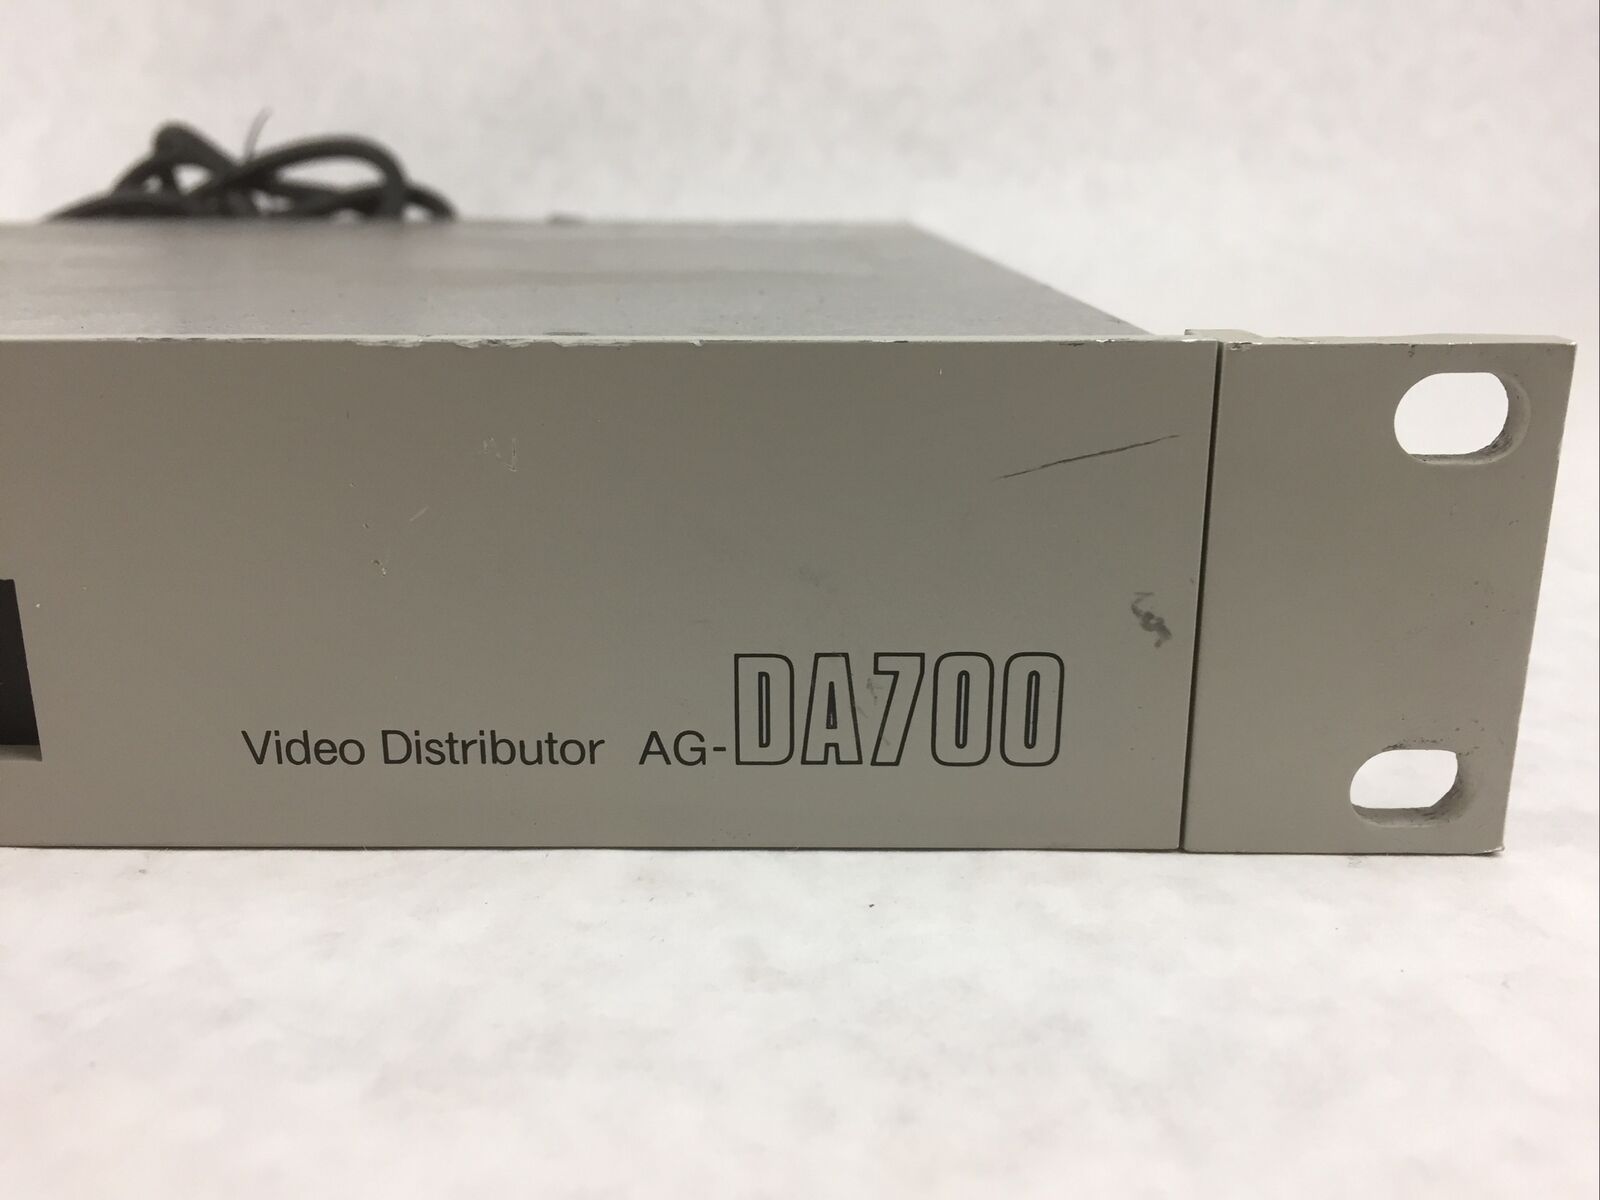 Panasonic Video Distributor AG-DA700